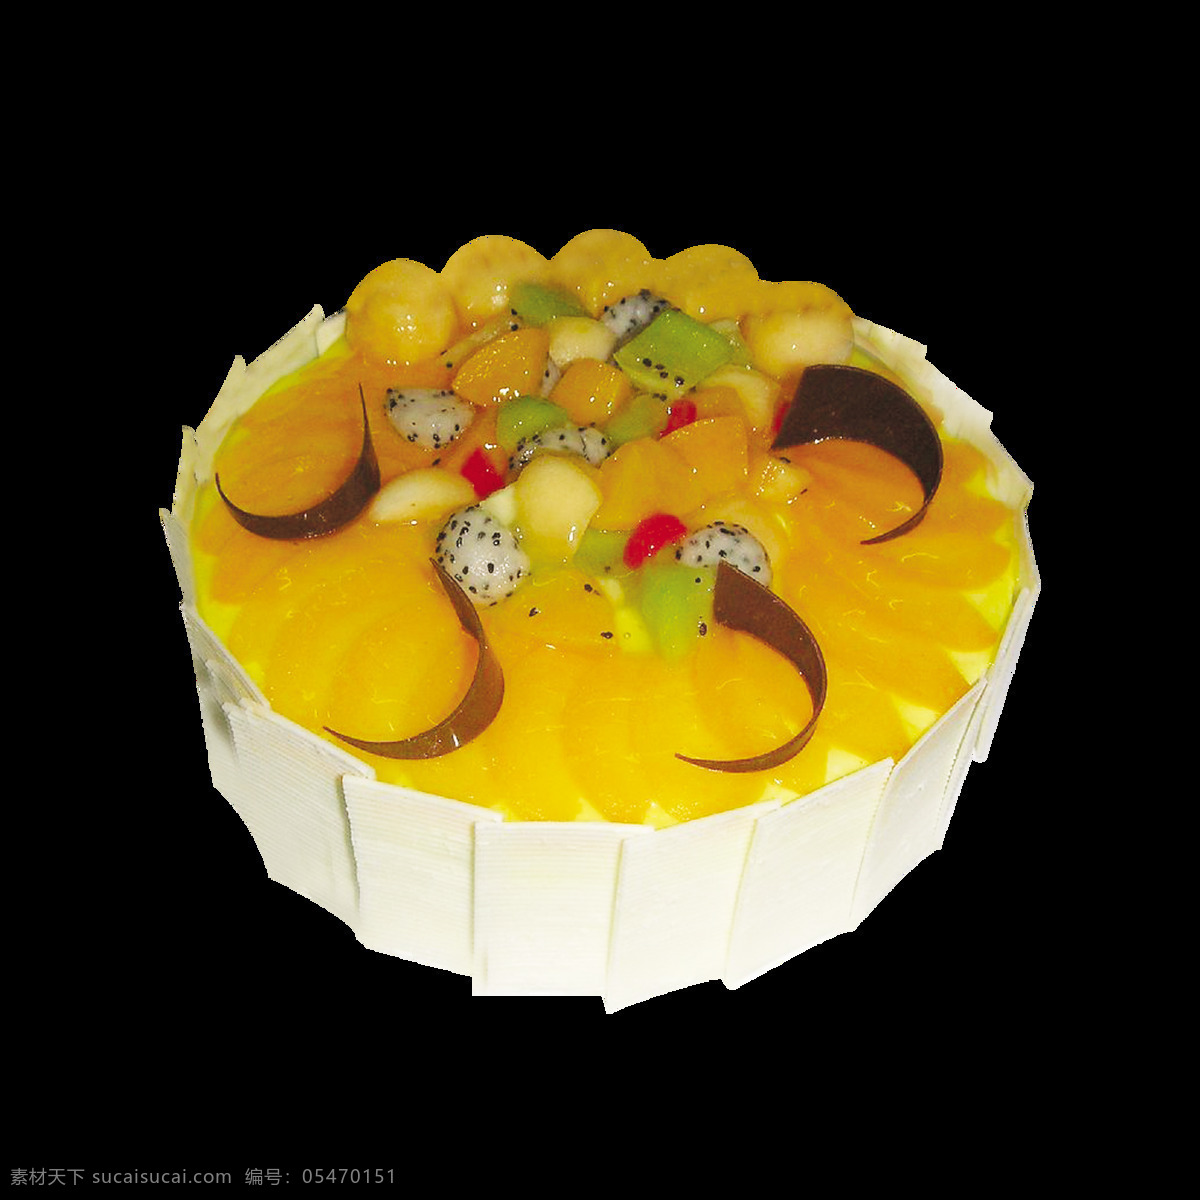 黄色 奶油 水果 蛋糕 蛋糕装饰 精美蛋糕素材 美味蛋糕 生日快乐 双层蛋糕